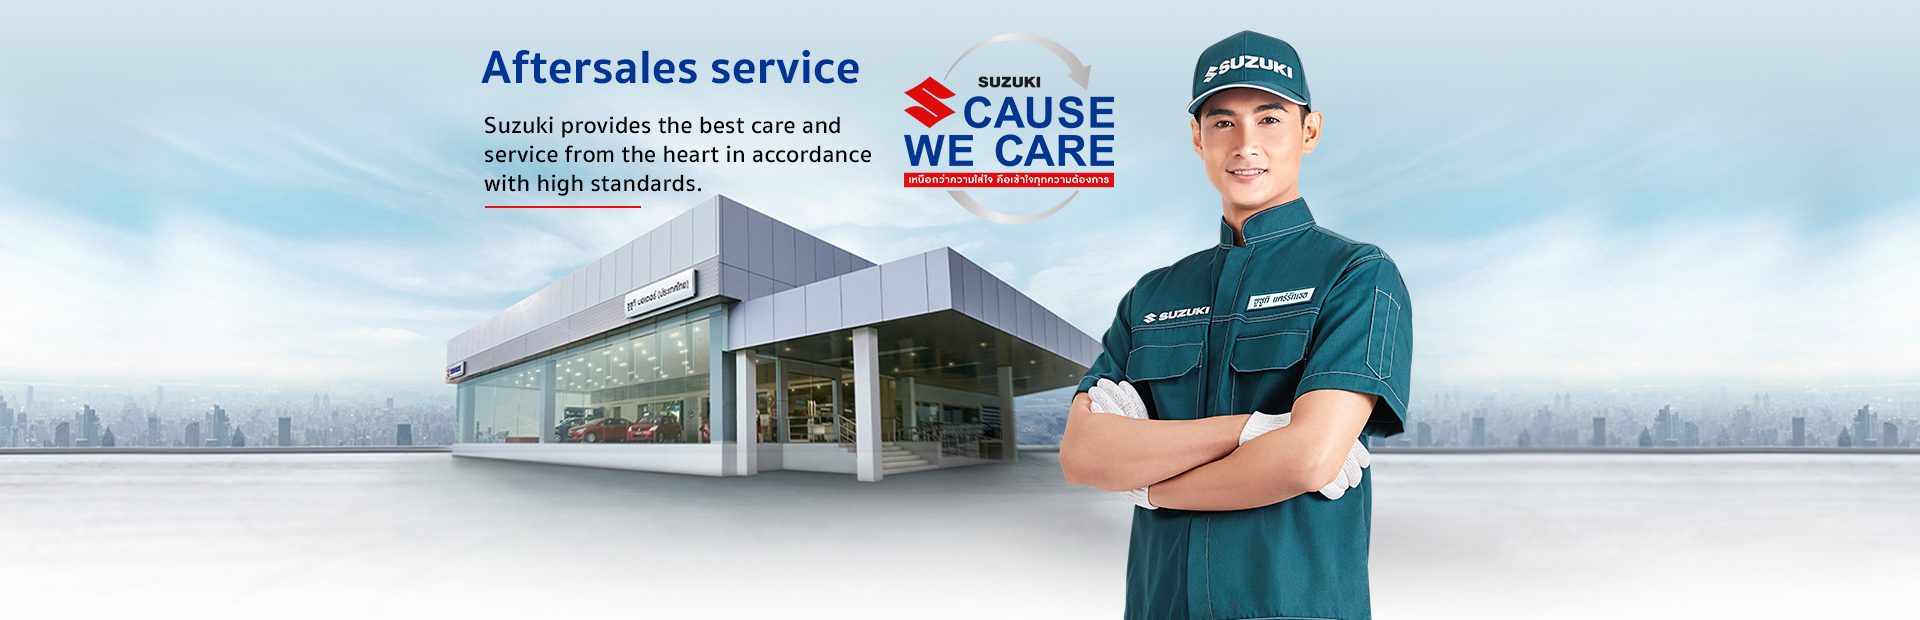 Aftersales services - Suzuki Cause We Care